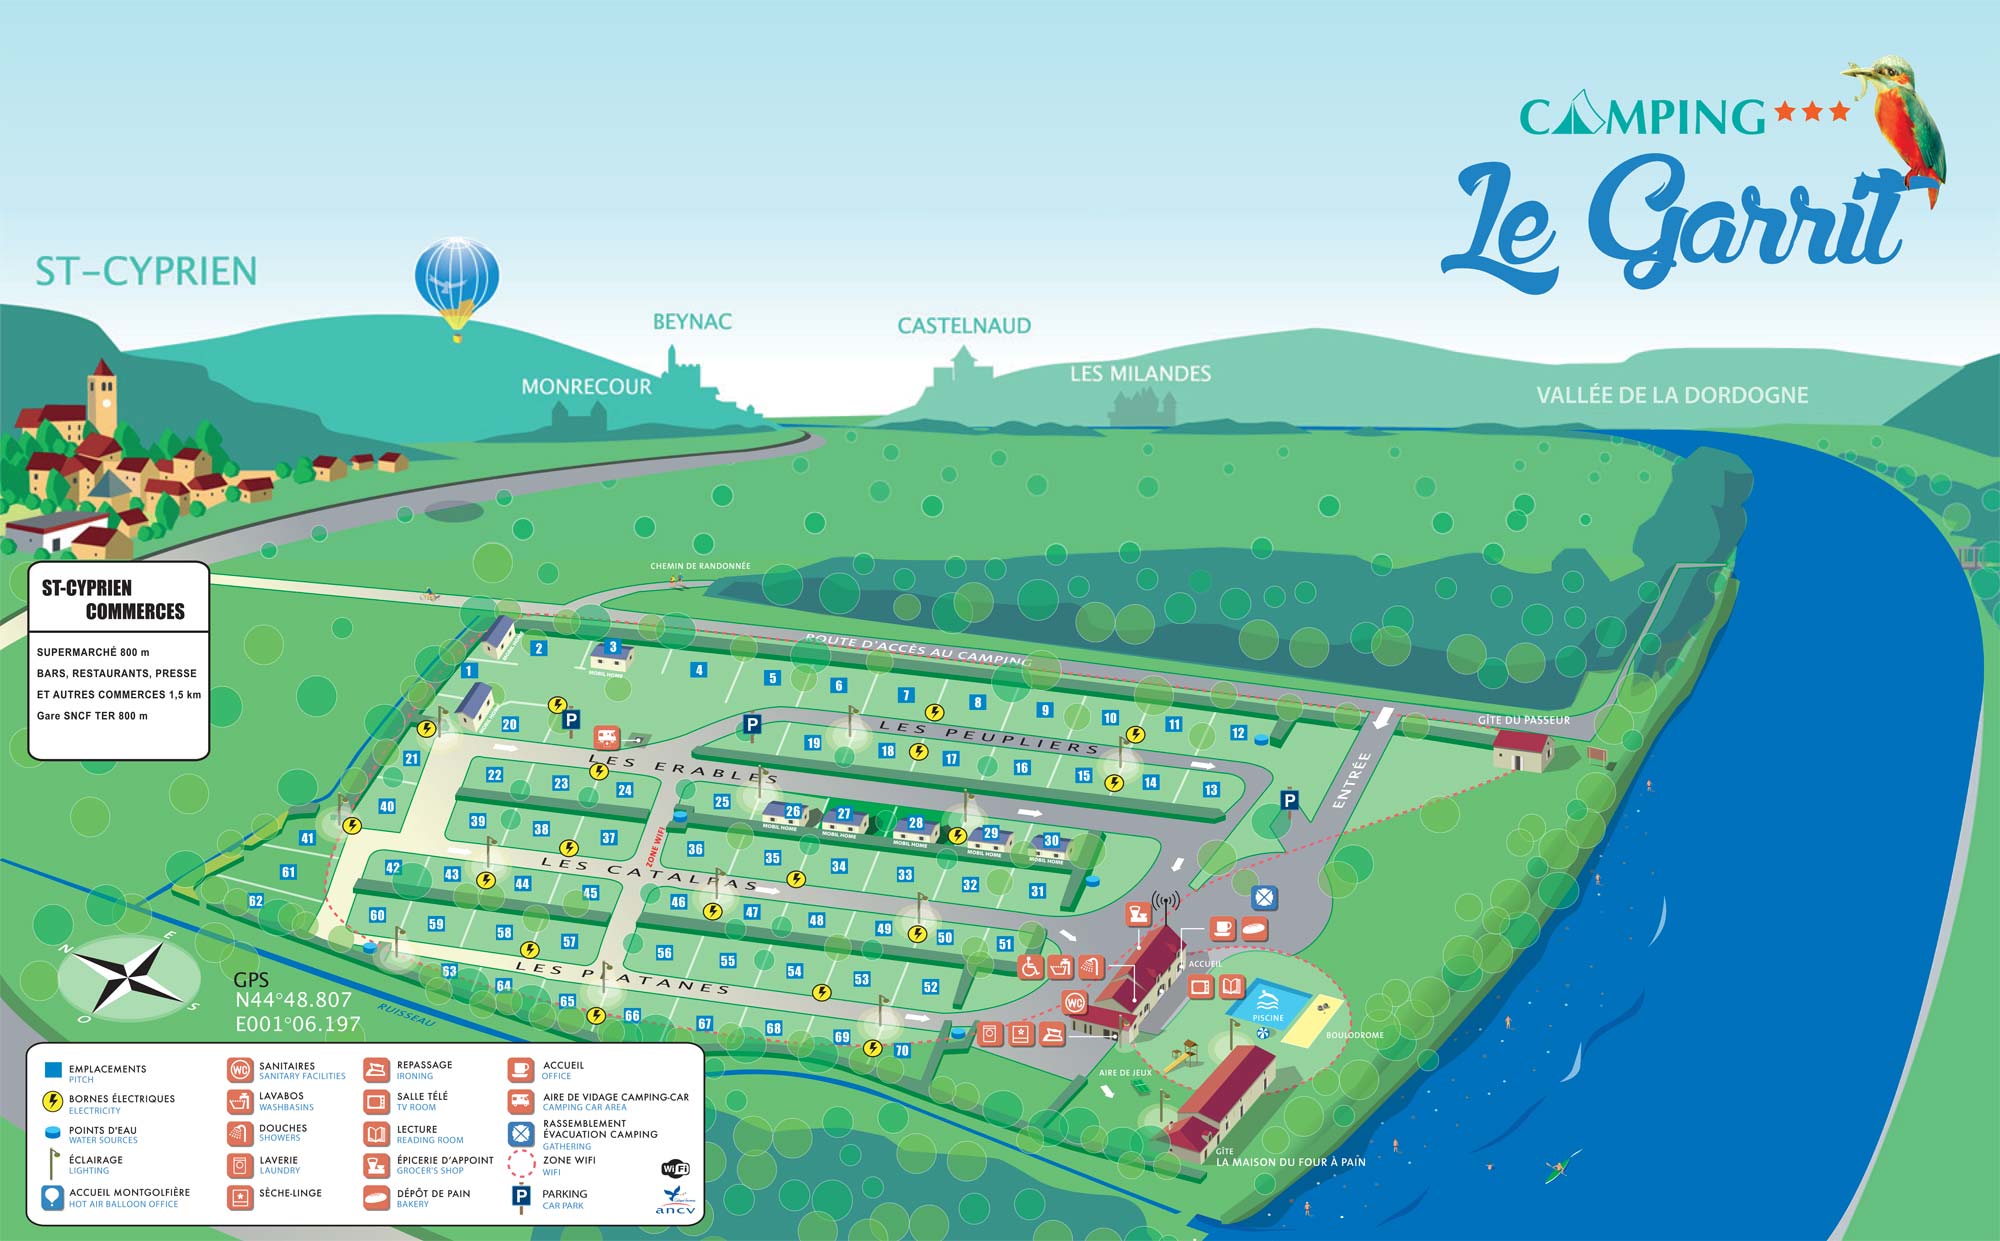 Map of the campsite in Dordogne Périgord Noir - Dordogne Valley